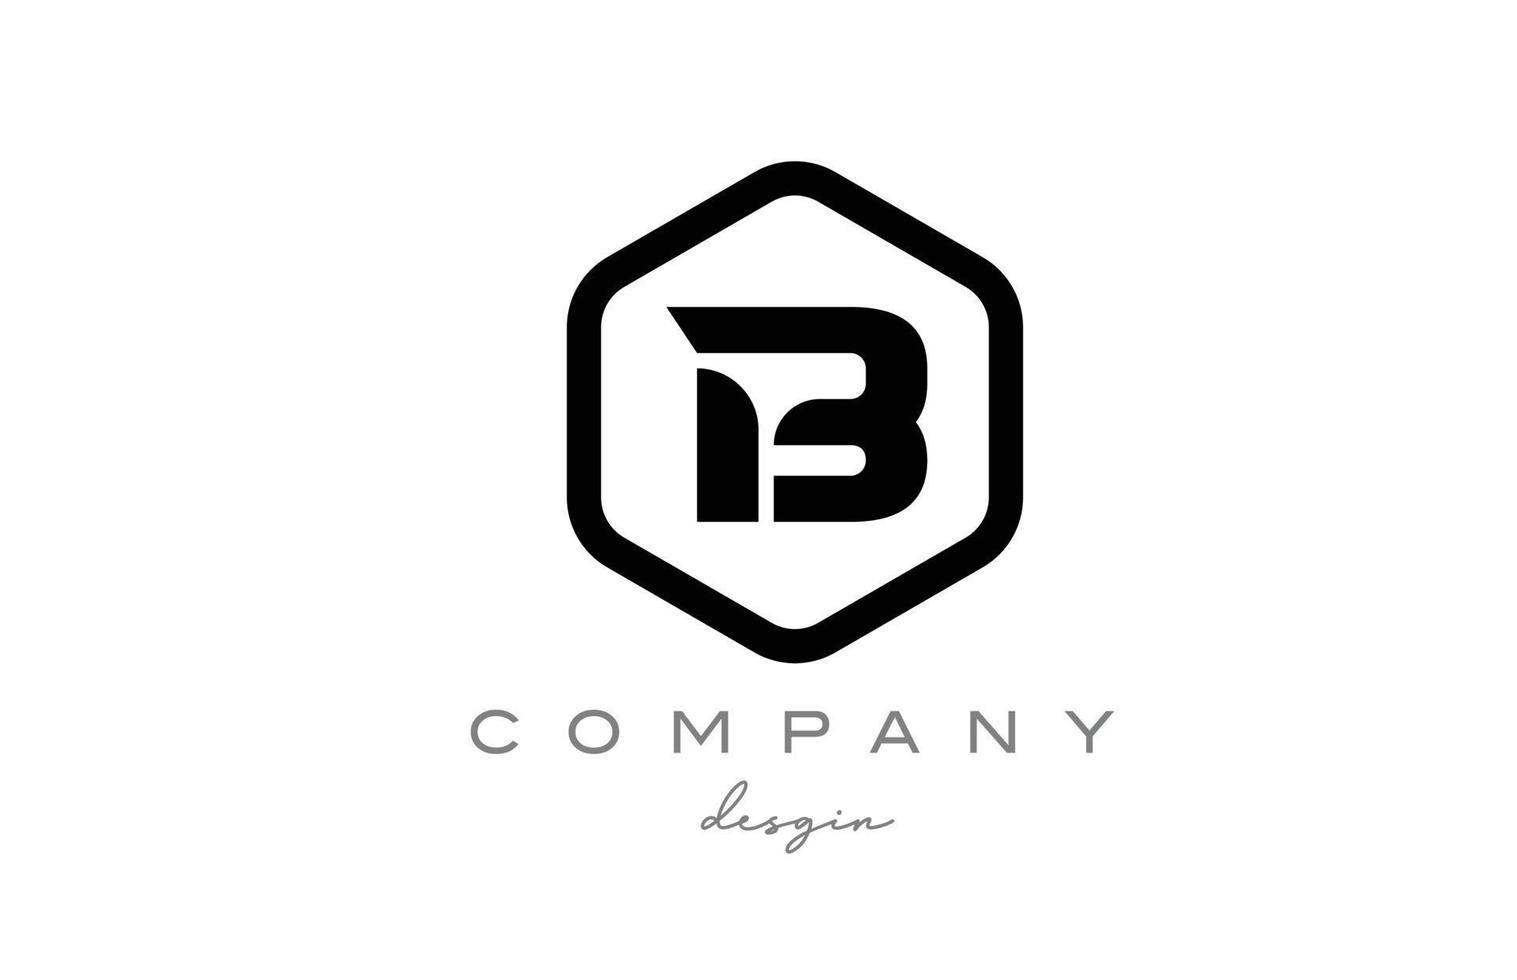 zwart-wit b alfabet letter embleemontwerp pictogram met zeshoek. creatieve sjabloon voor zaken en bedrijf vector